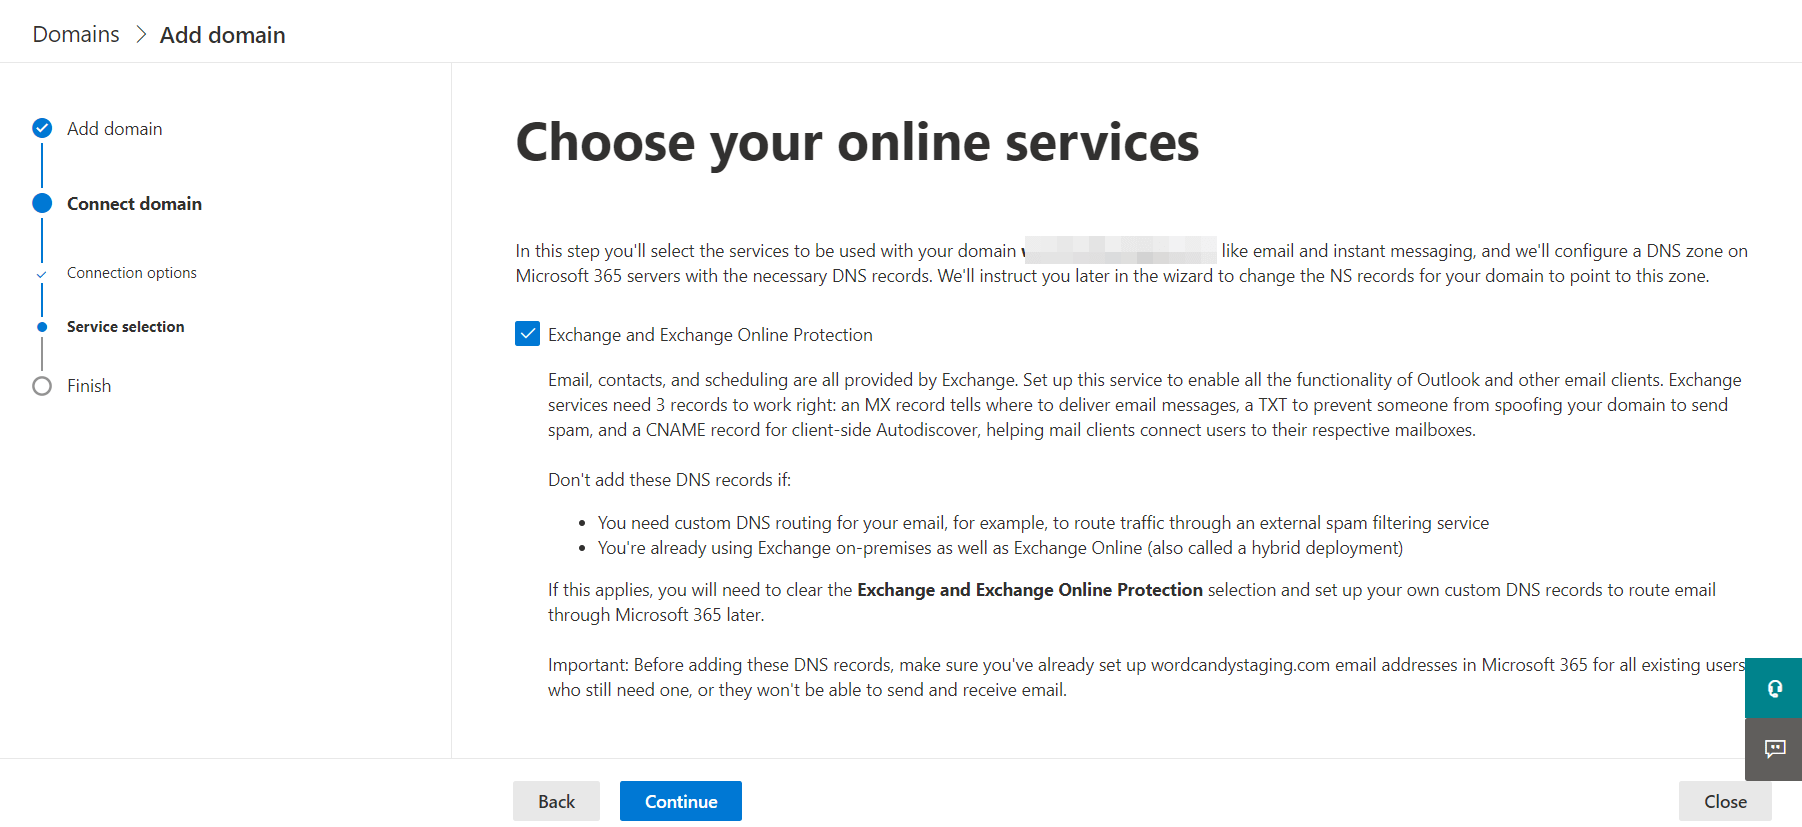 Выбор онлайн-сервисов для учетной записи Microsoft